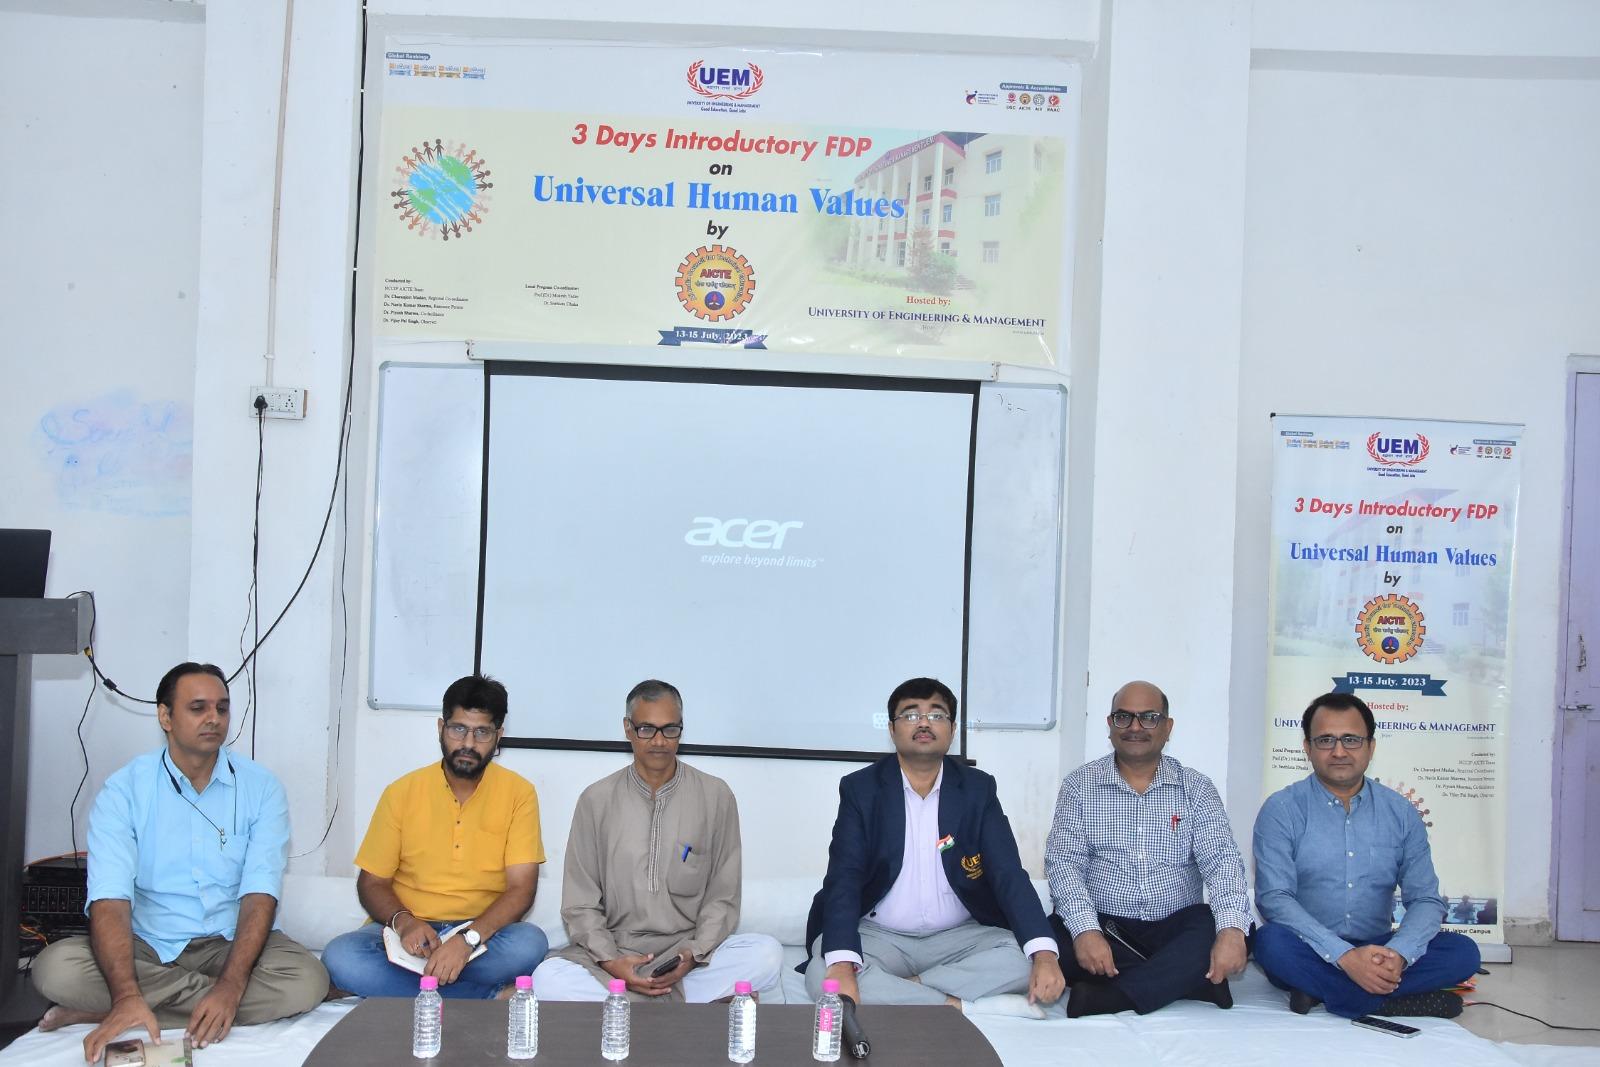 एआईसीटीई ने यू.ई.एम, जयपुर में सार्वभौमिक मानवीय मूल्यों पर 3 दिवसीय संकाय विकास कार्यक्रम का किया आयोजन